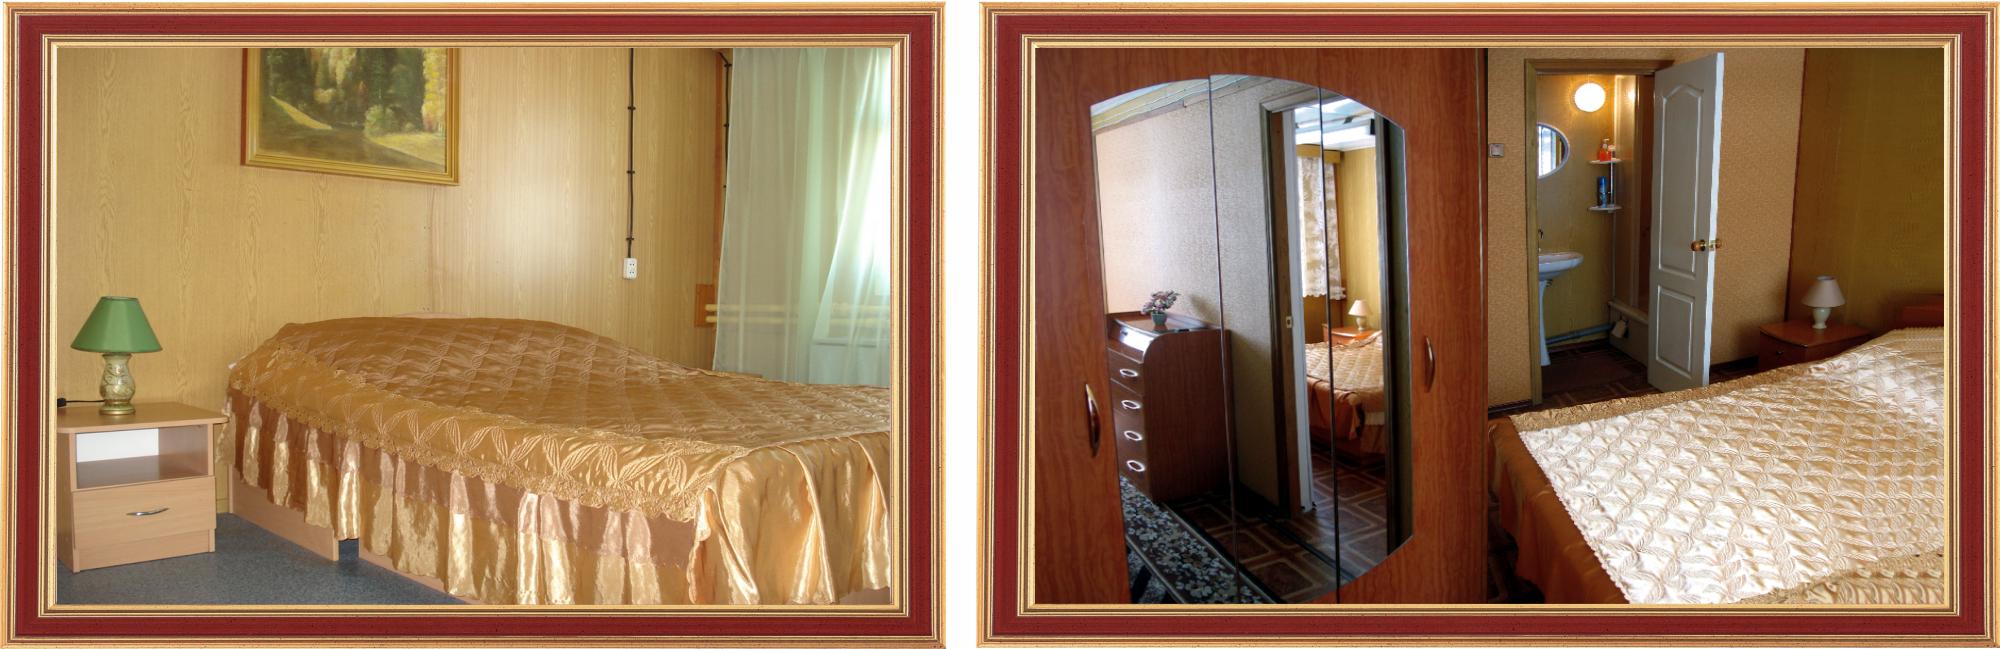 Уютные комнаты для проживания в гостинице